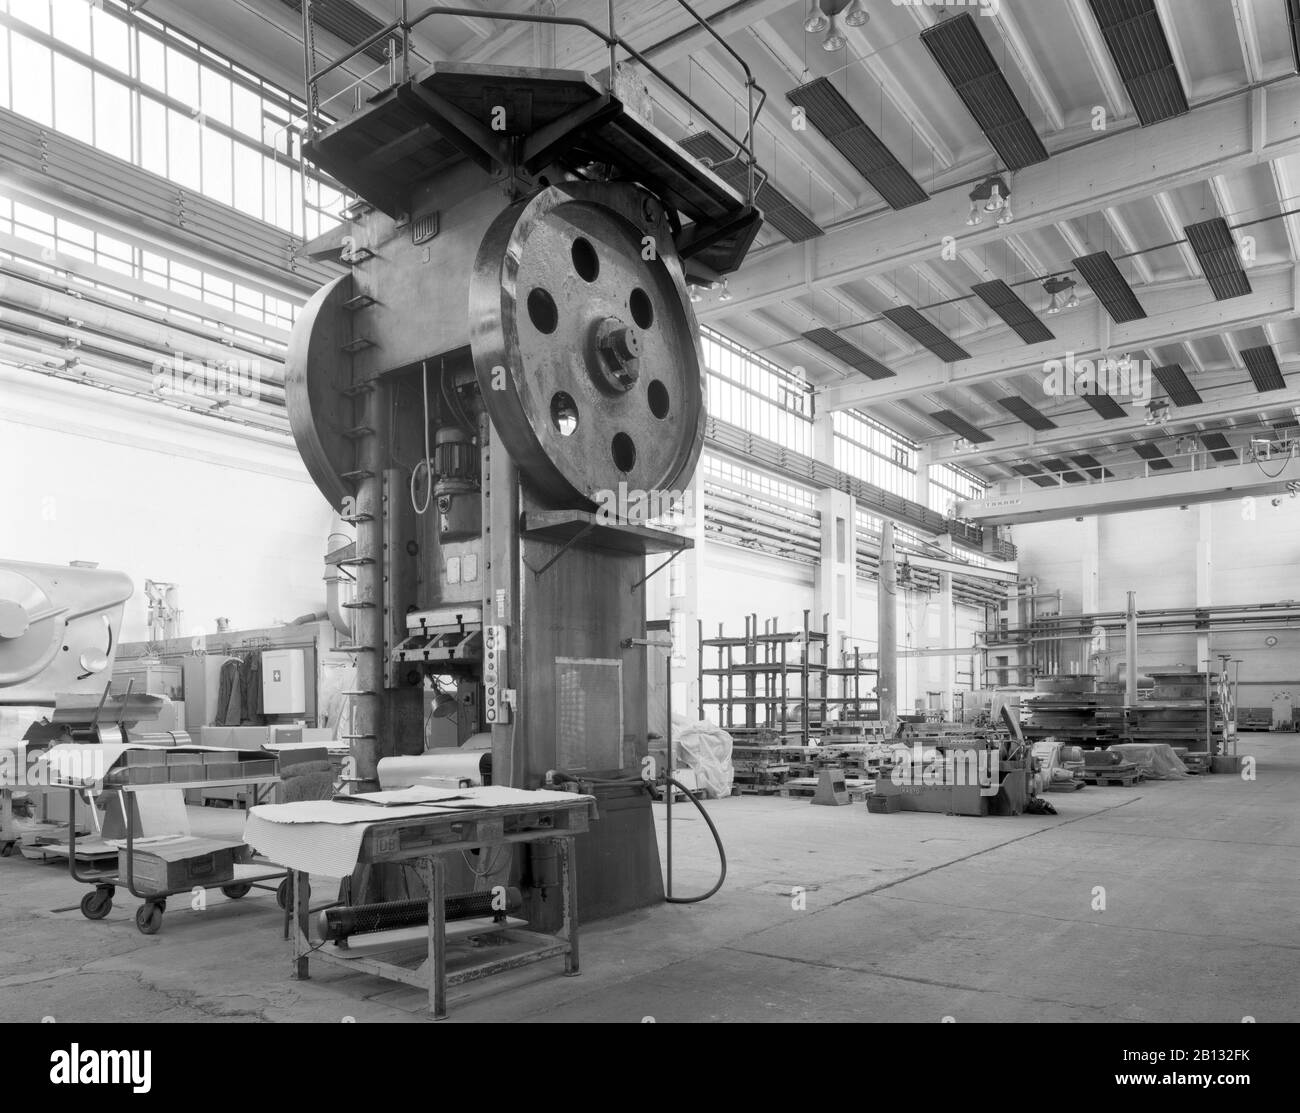 Ancienne presse dans une usine à Artern, Thuringe, Allemagne Banque D'Images